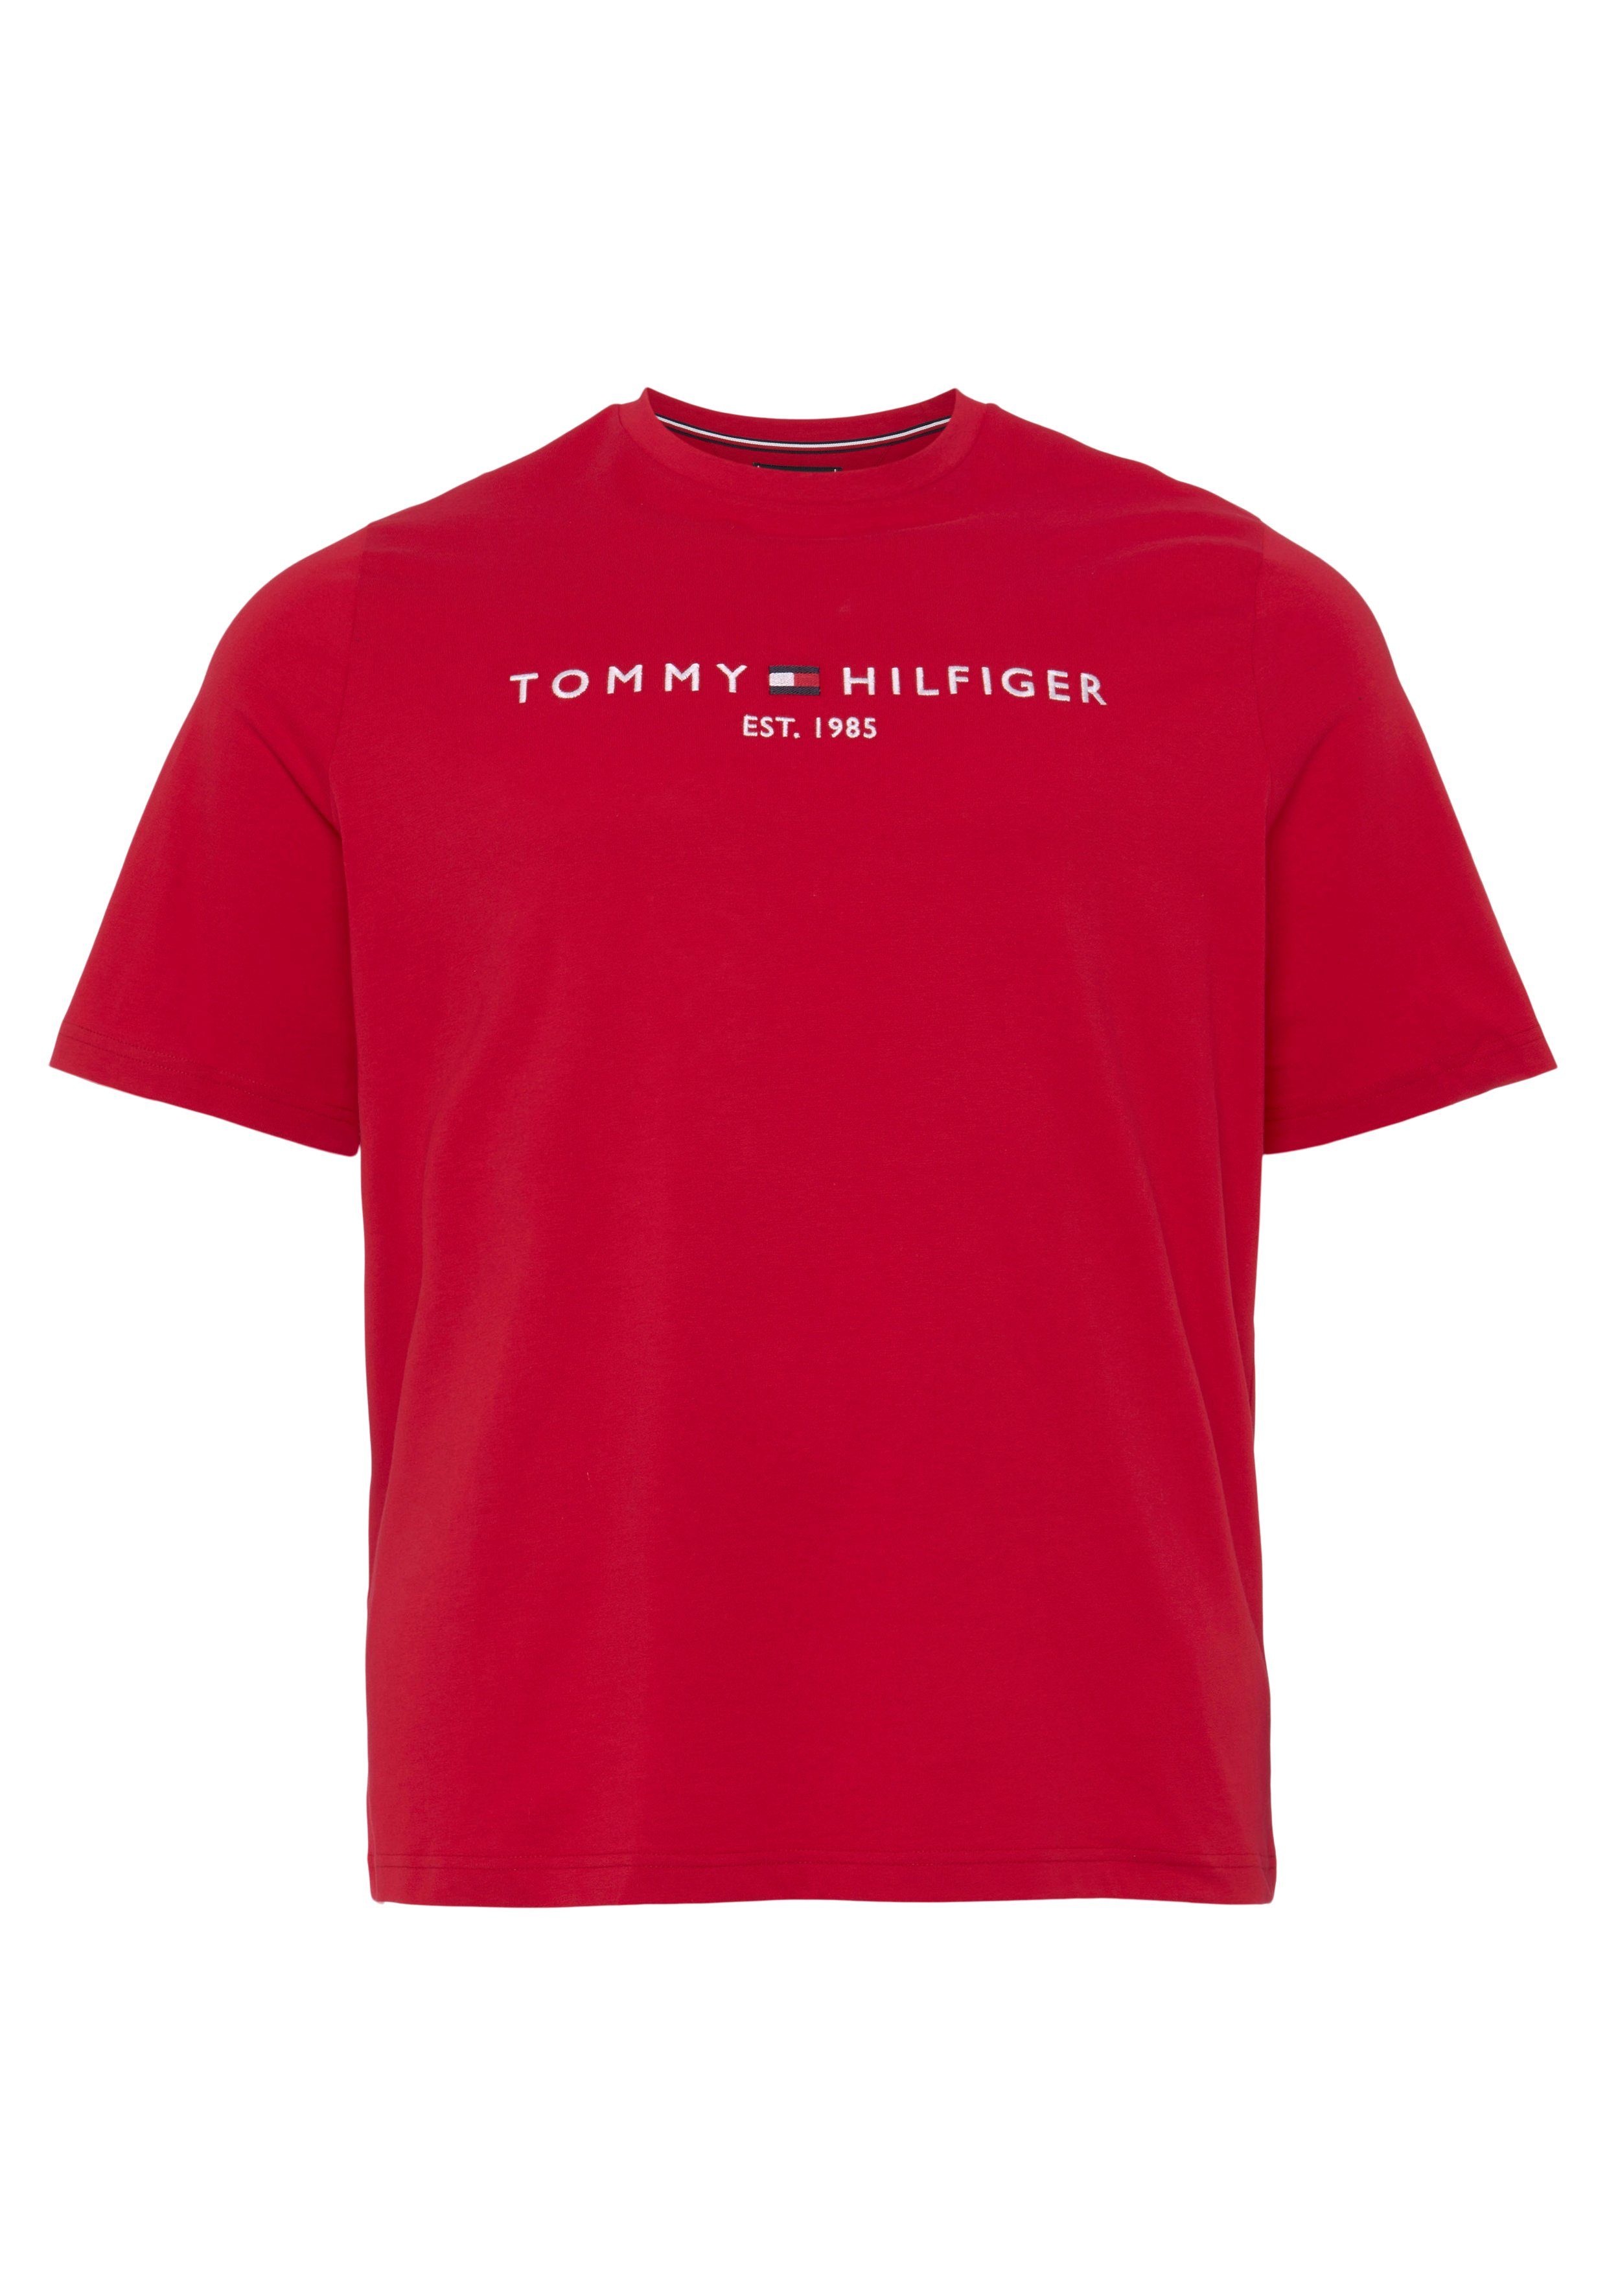 der Brust Hilfiger T-Shirt LOGO rot BT-TOMMY Tommy Tall Big Tommy mit Hilfiger TEE-B & Logoschriftzug auf